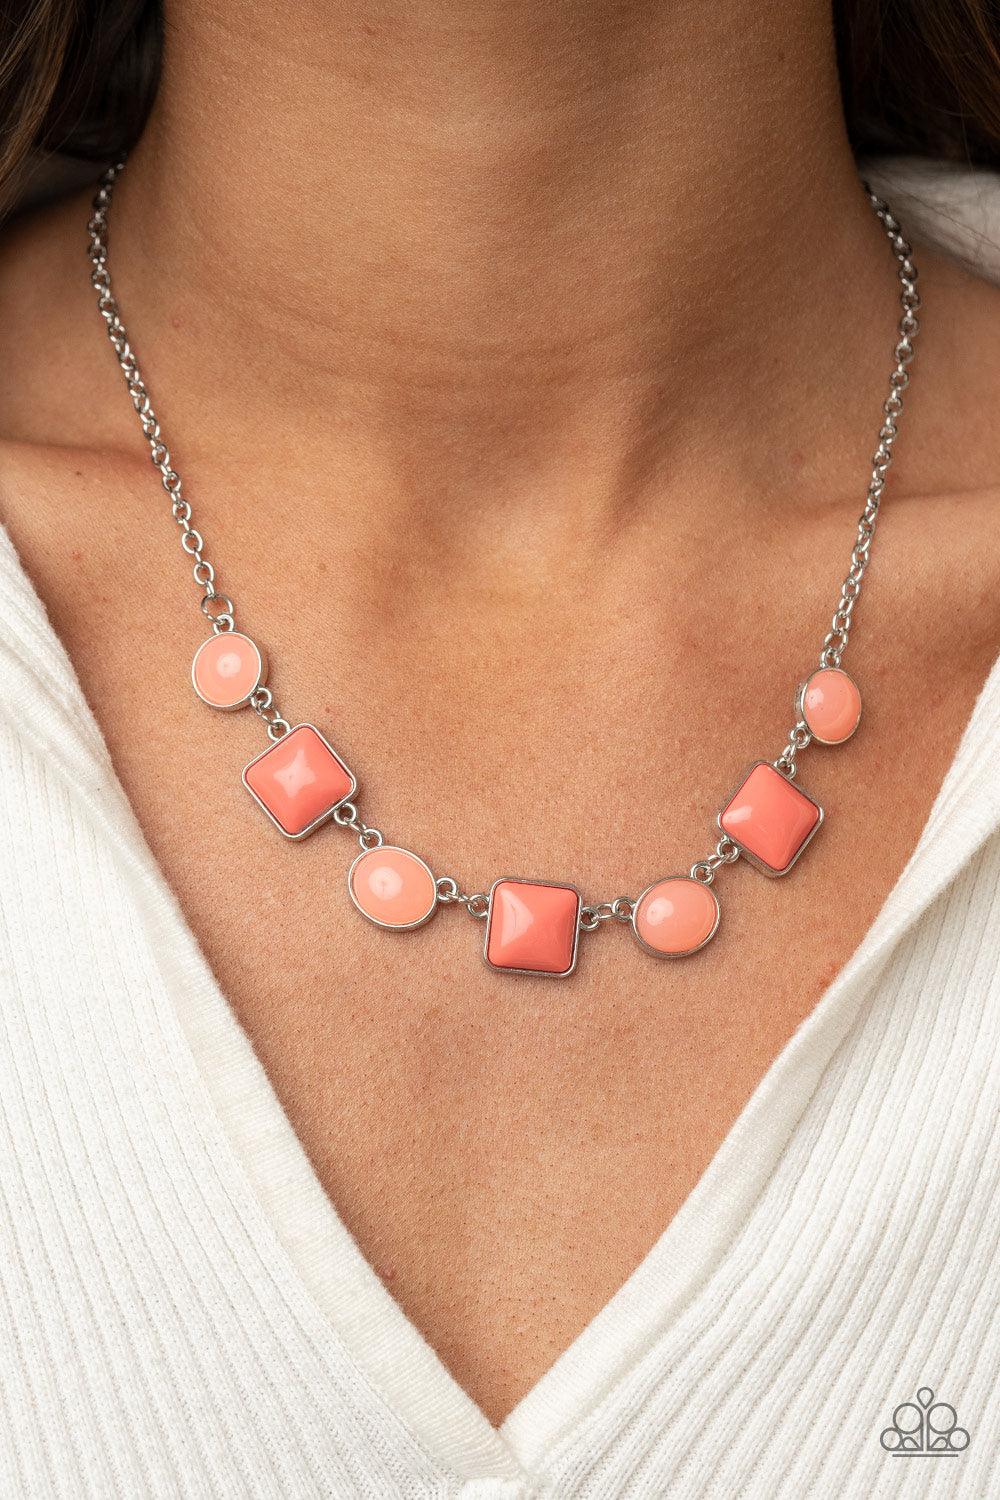 Trend Worthy Orange Necklace - Jewelry by Bretta